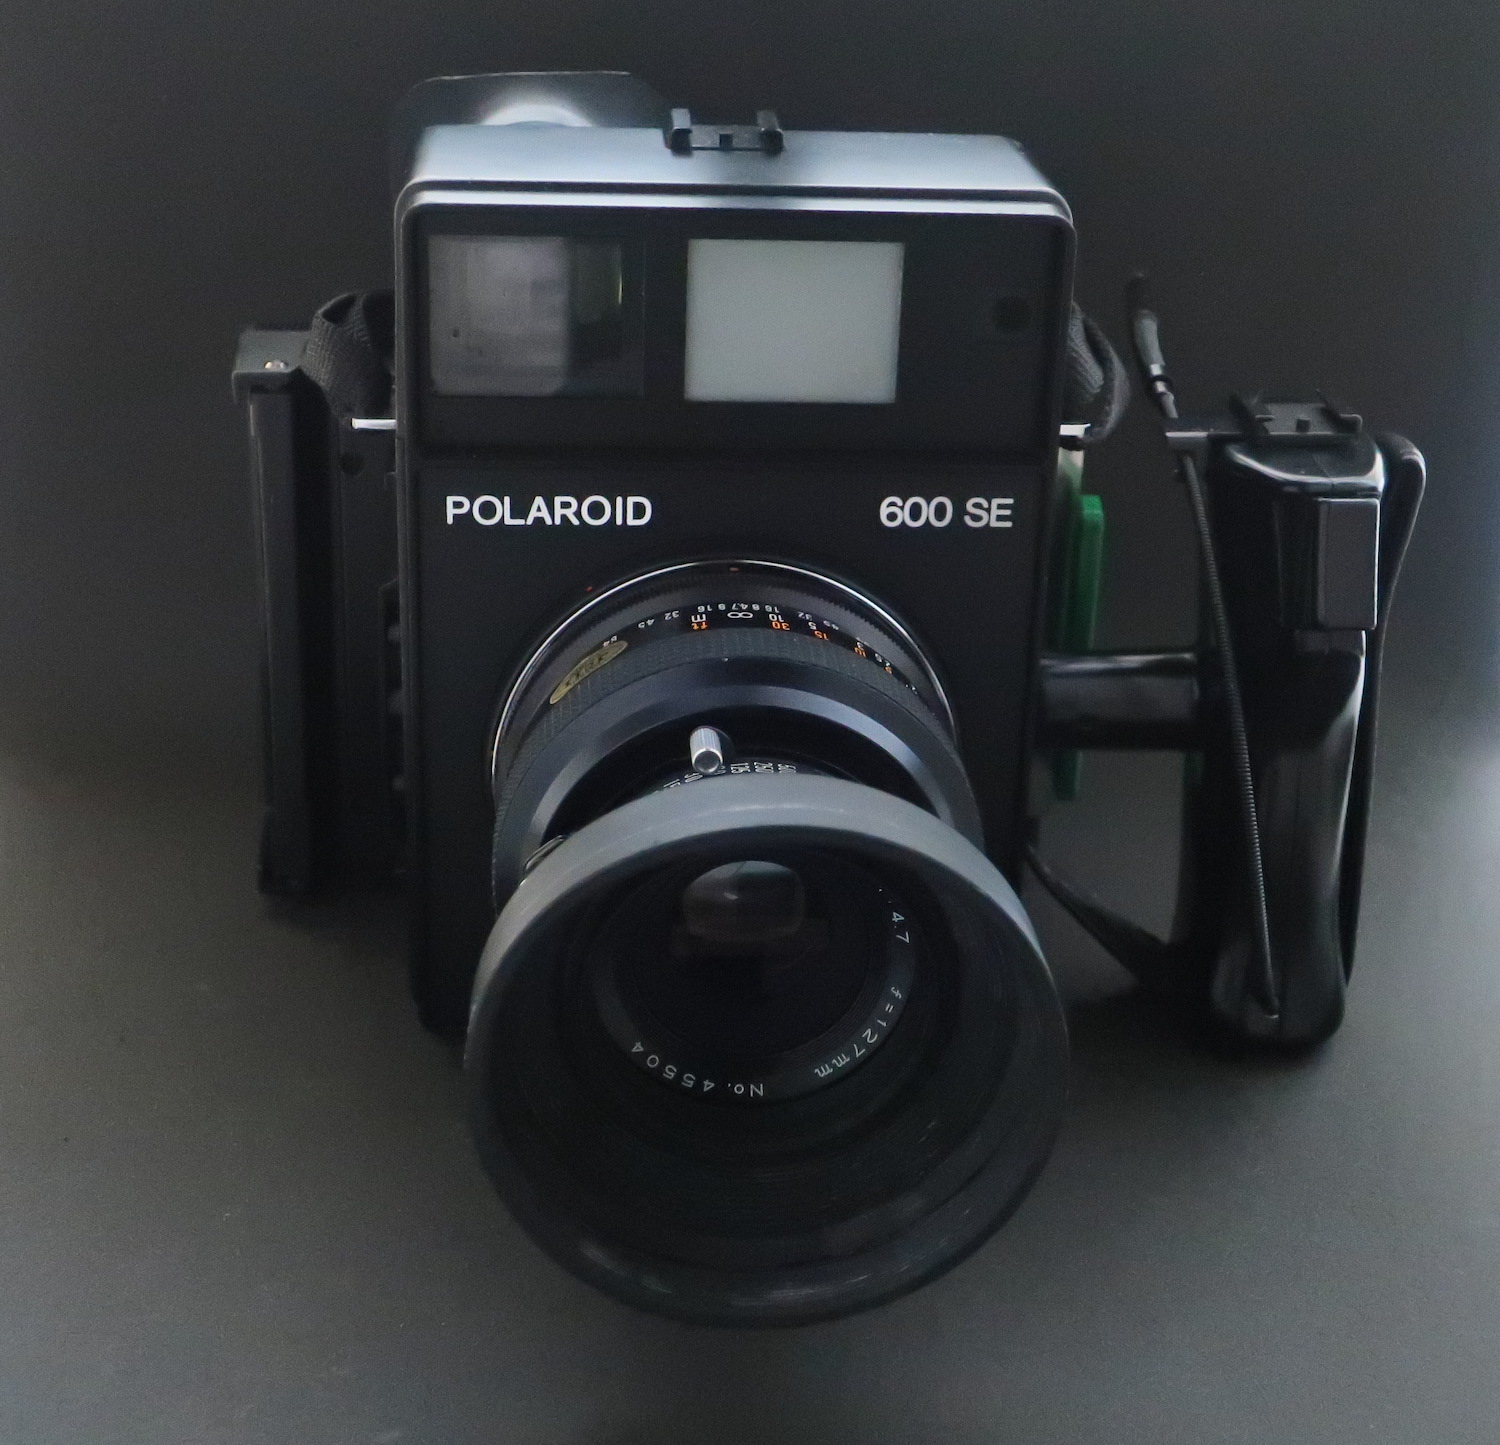 【適格請求書発行】POLAROID ポラロイド 600SE 中判カメラ 150mm F5.6 127mm F4.7付【アルプスカメラ】240608b